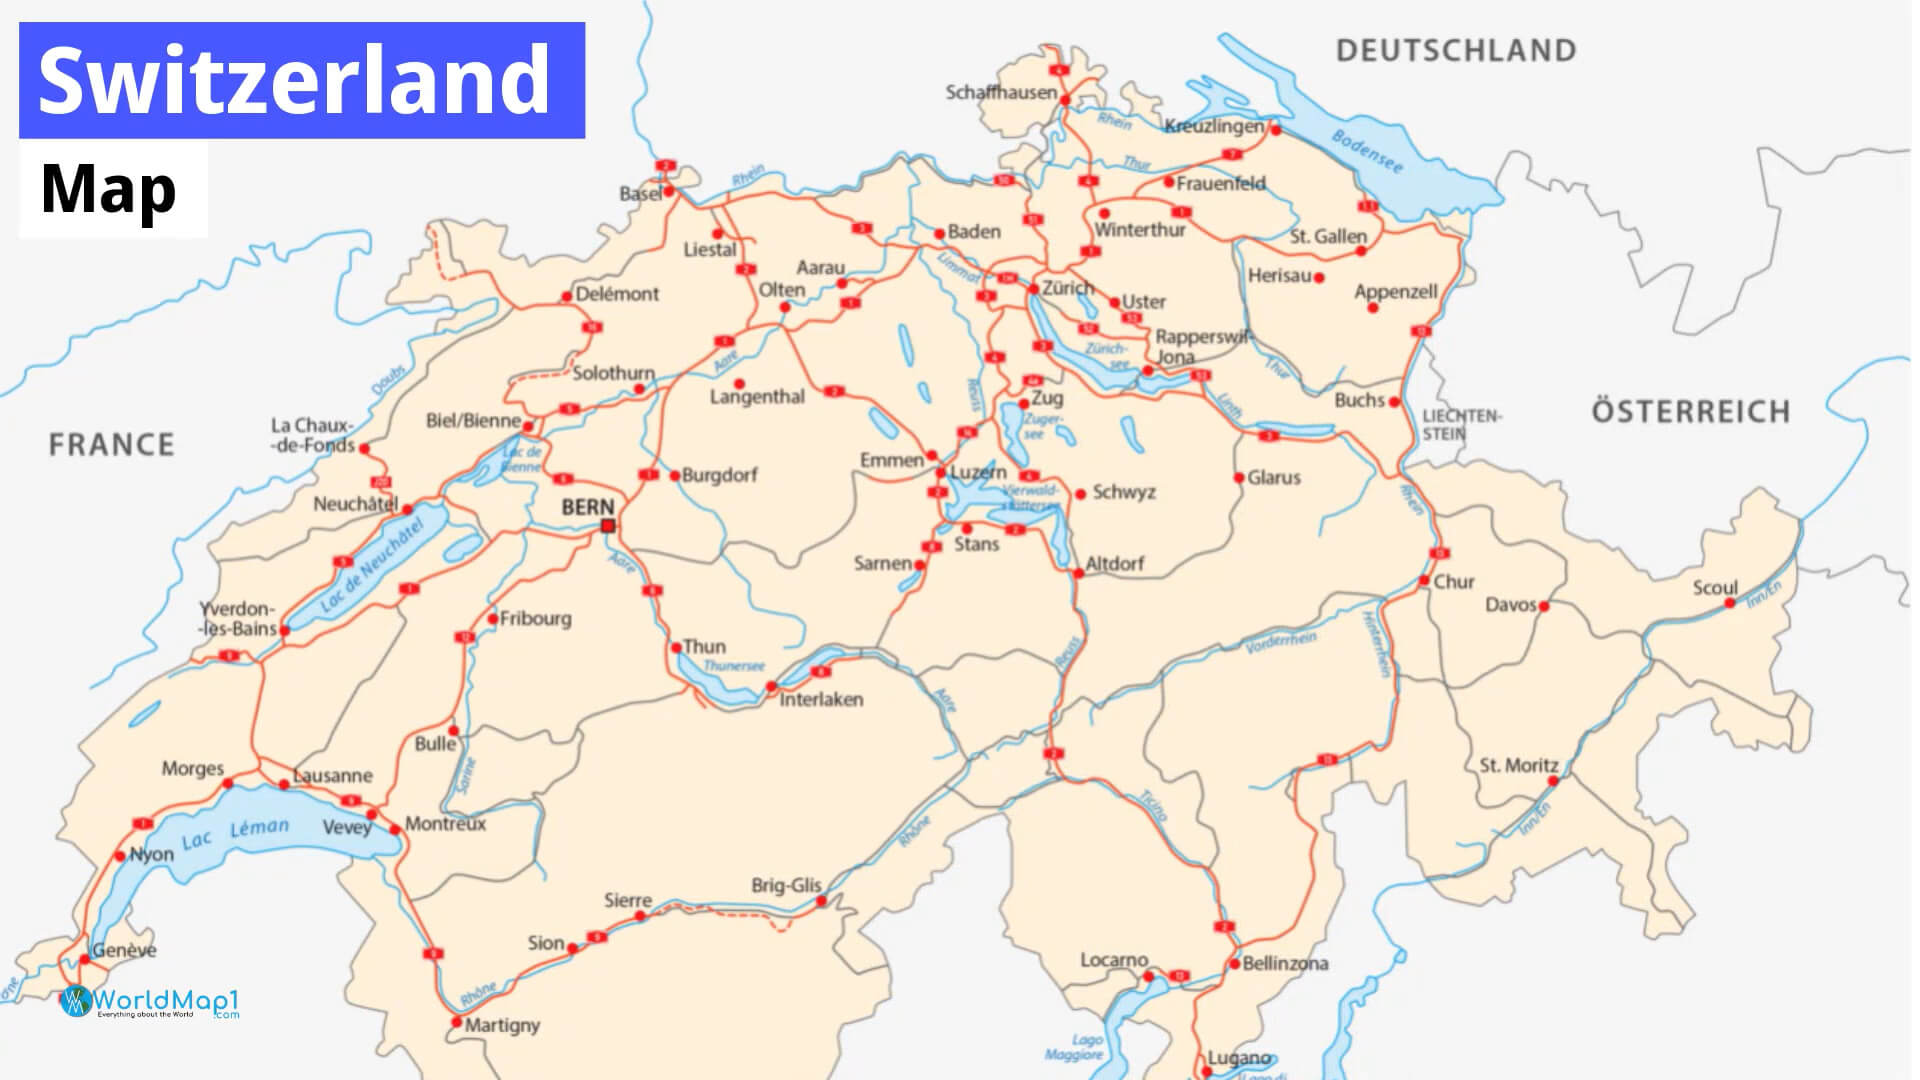 Switzerland Major Cities Map